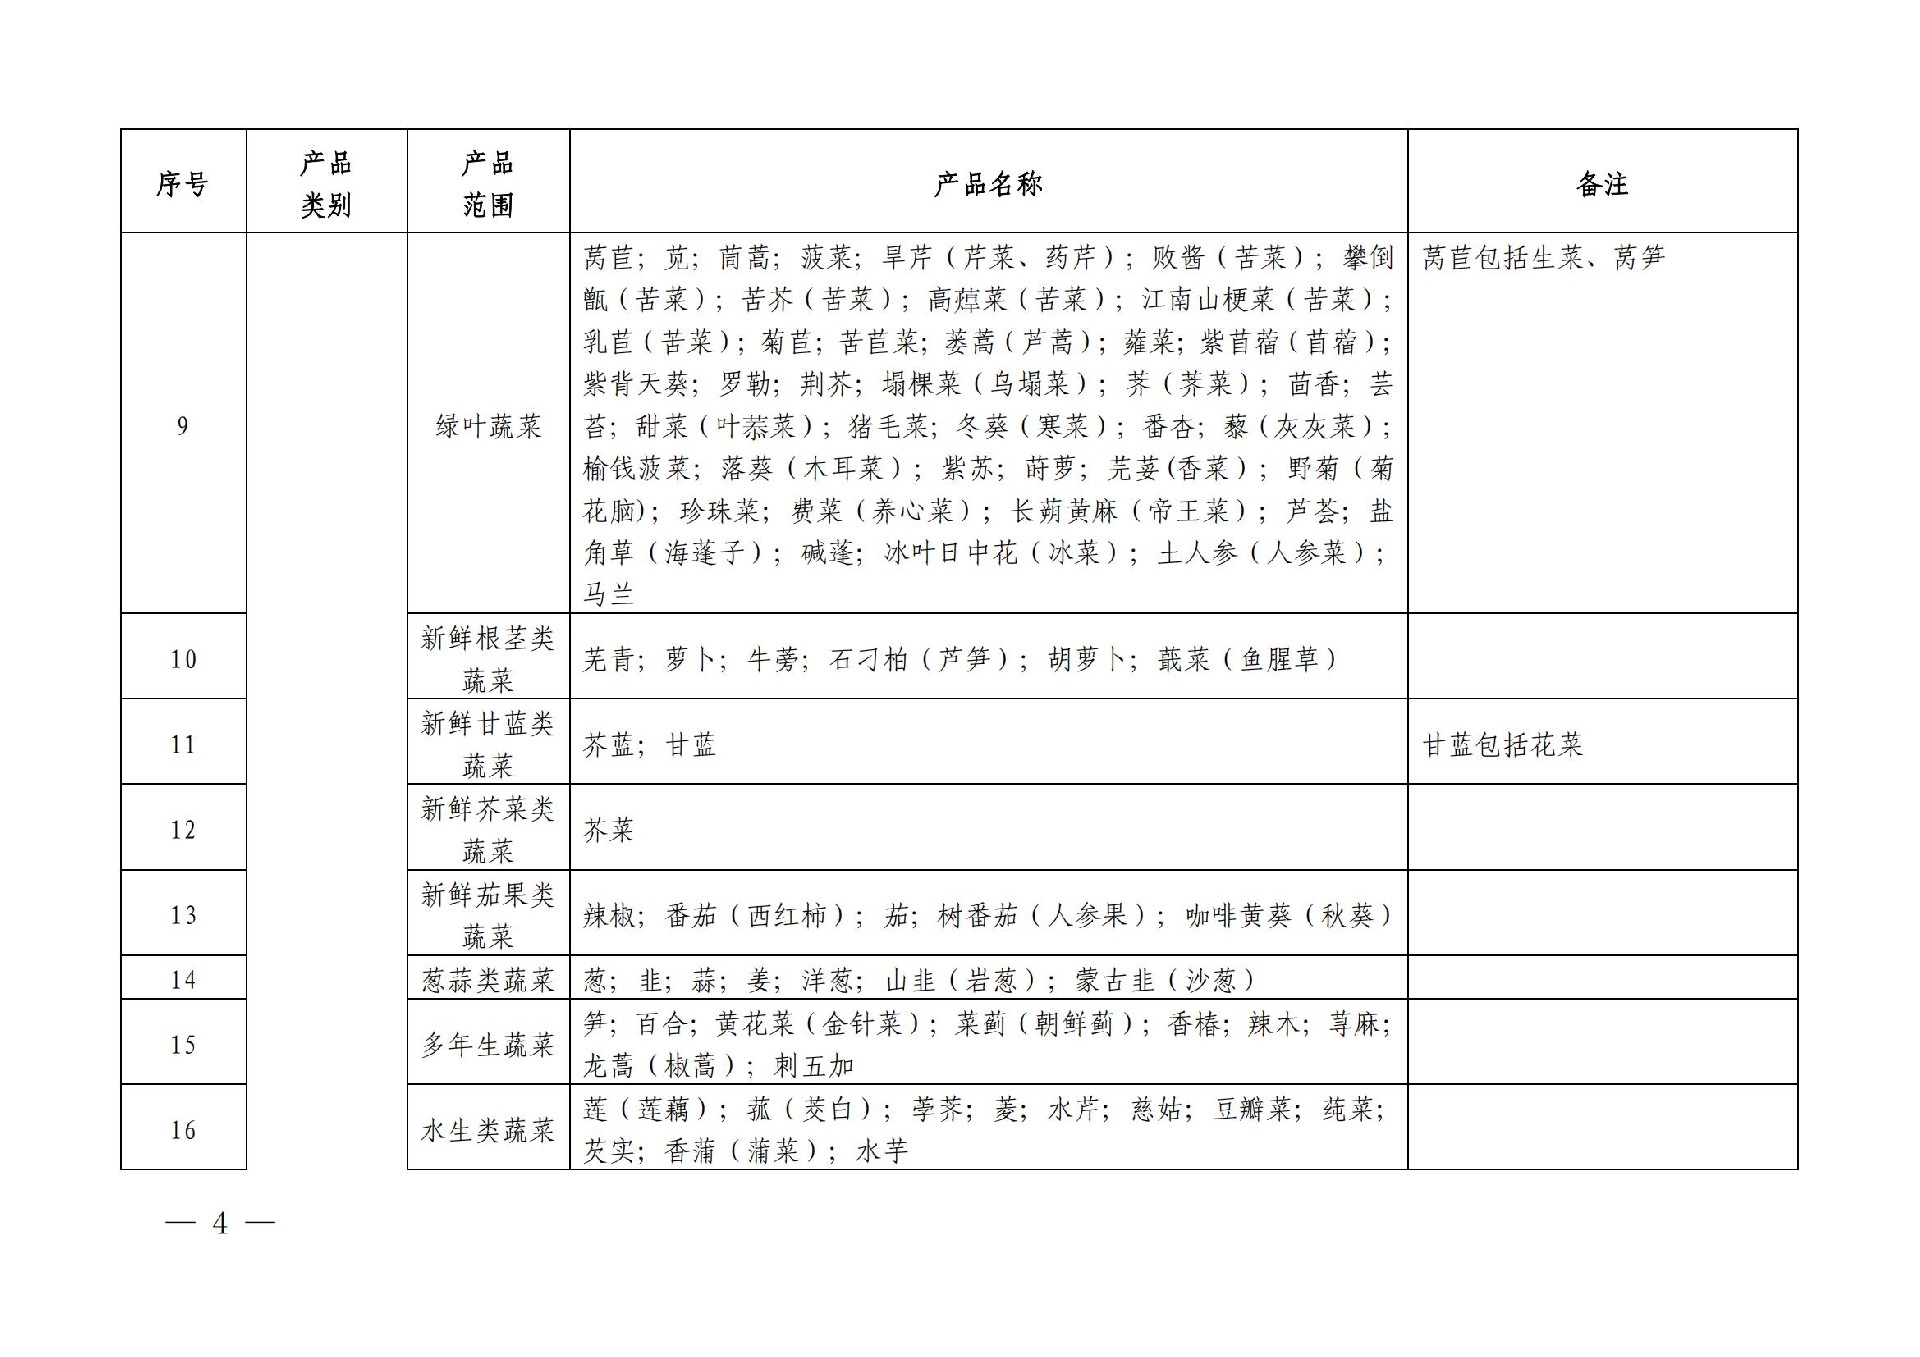 有机产品认证目录【认监委2019年第22号公告】(1)_03.jpg